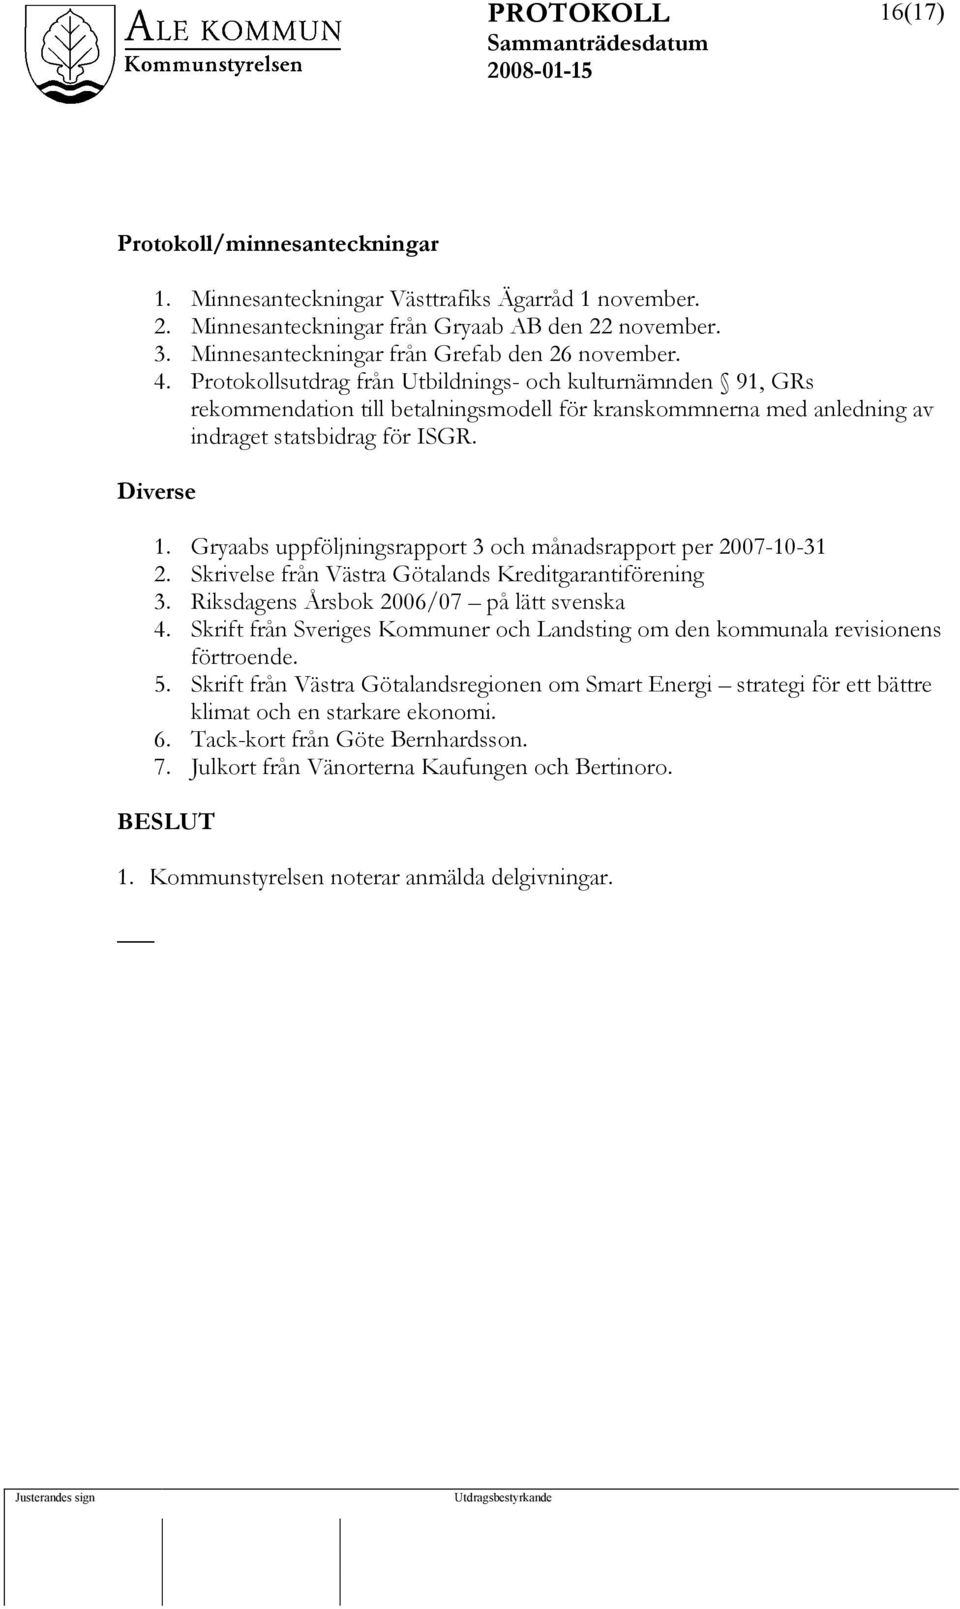 Gryaabs uppföljningsrapport 3 och månadsrapport per 2007-10-31 2. Skrivelse från Västra Götalands Kreditgarantiförening 3. Riksdagens Årsbok 2006/07 på lätt svenska 4.